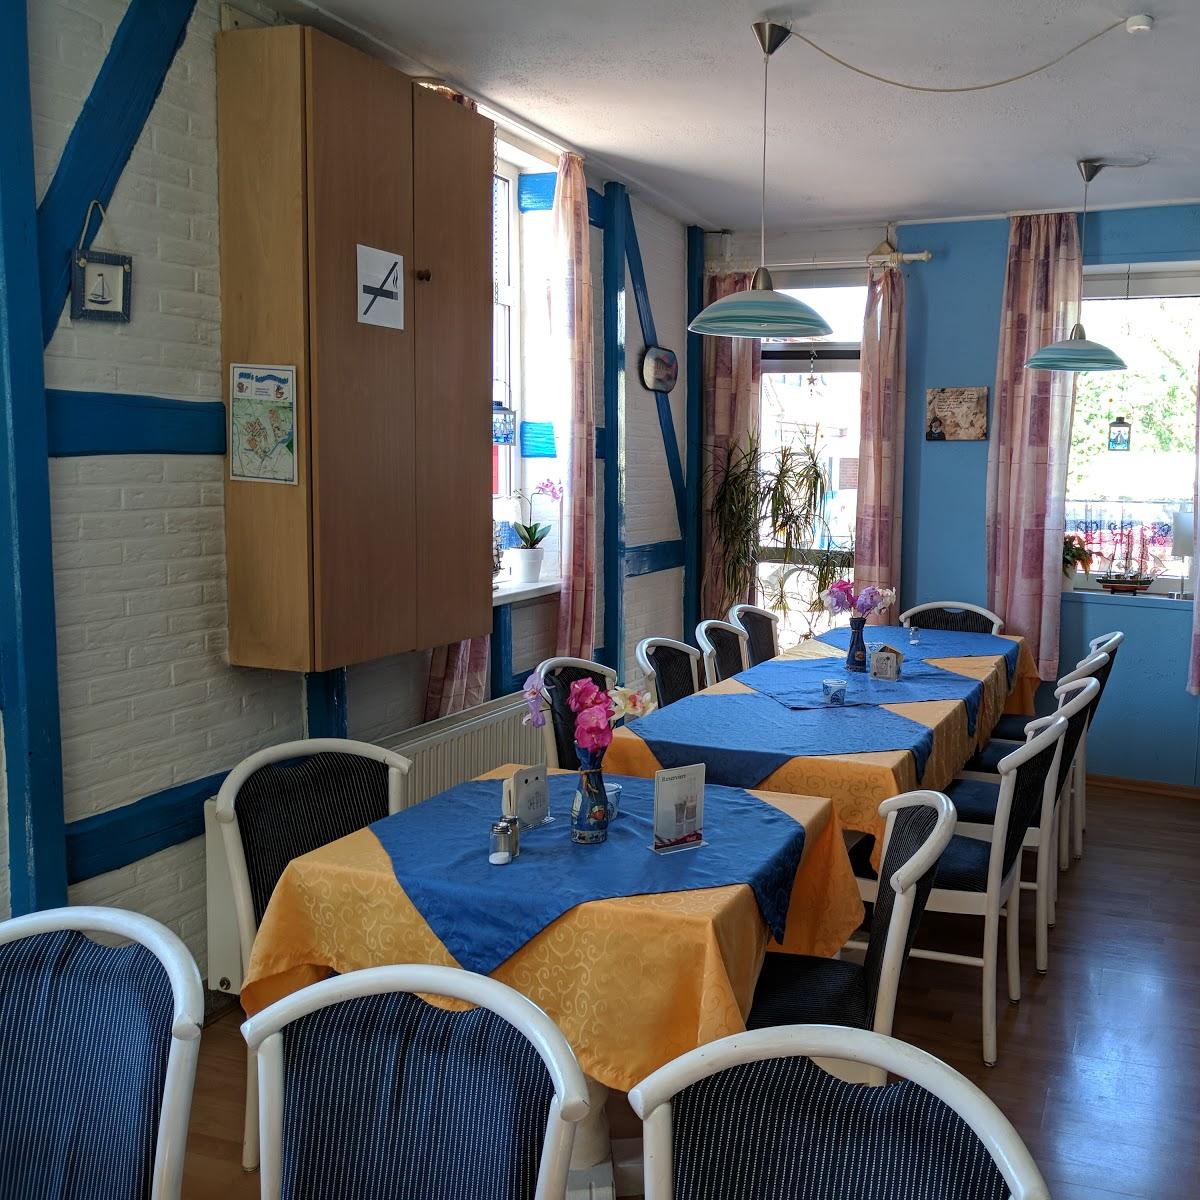 Restaurant "Siggi´s Restaurant" in Wangerland